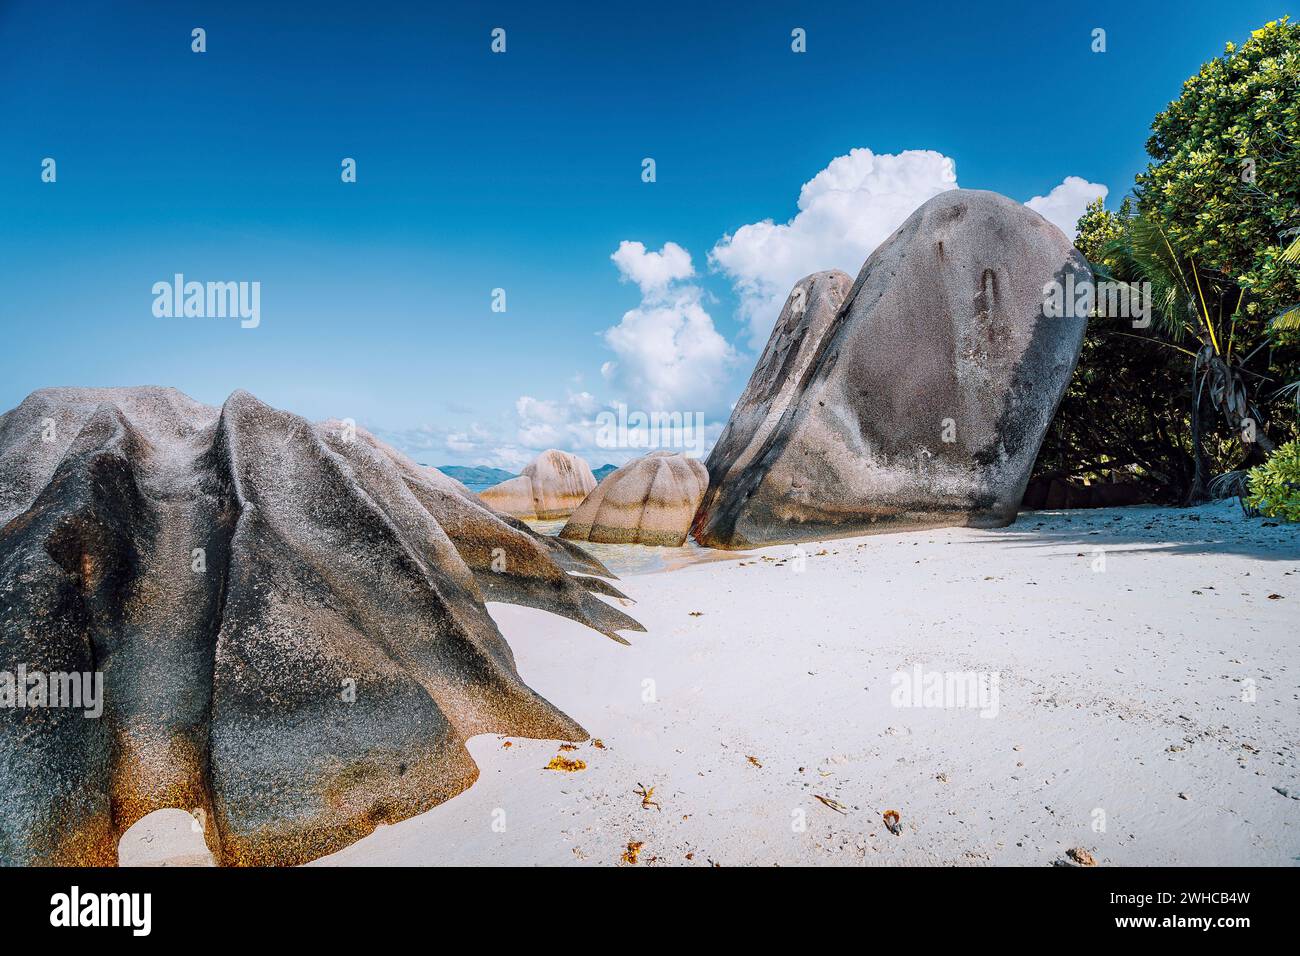 Anse source d'argent - plage tropicale incroyable avec d'énormes rochers de granit sur l'île de la Digue, Seychelles. Banque D'Images